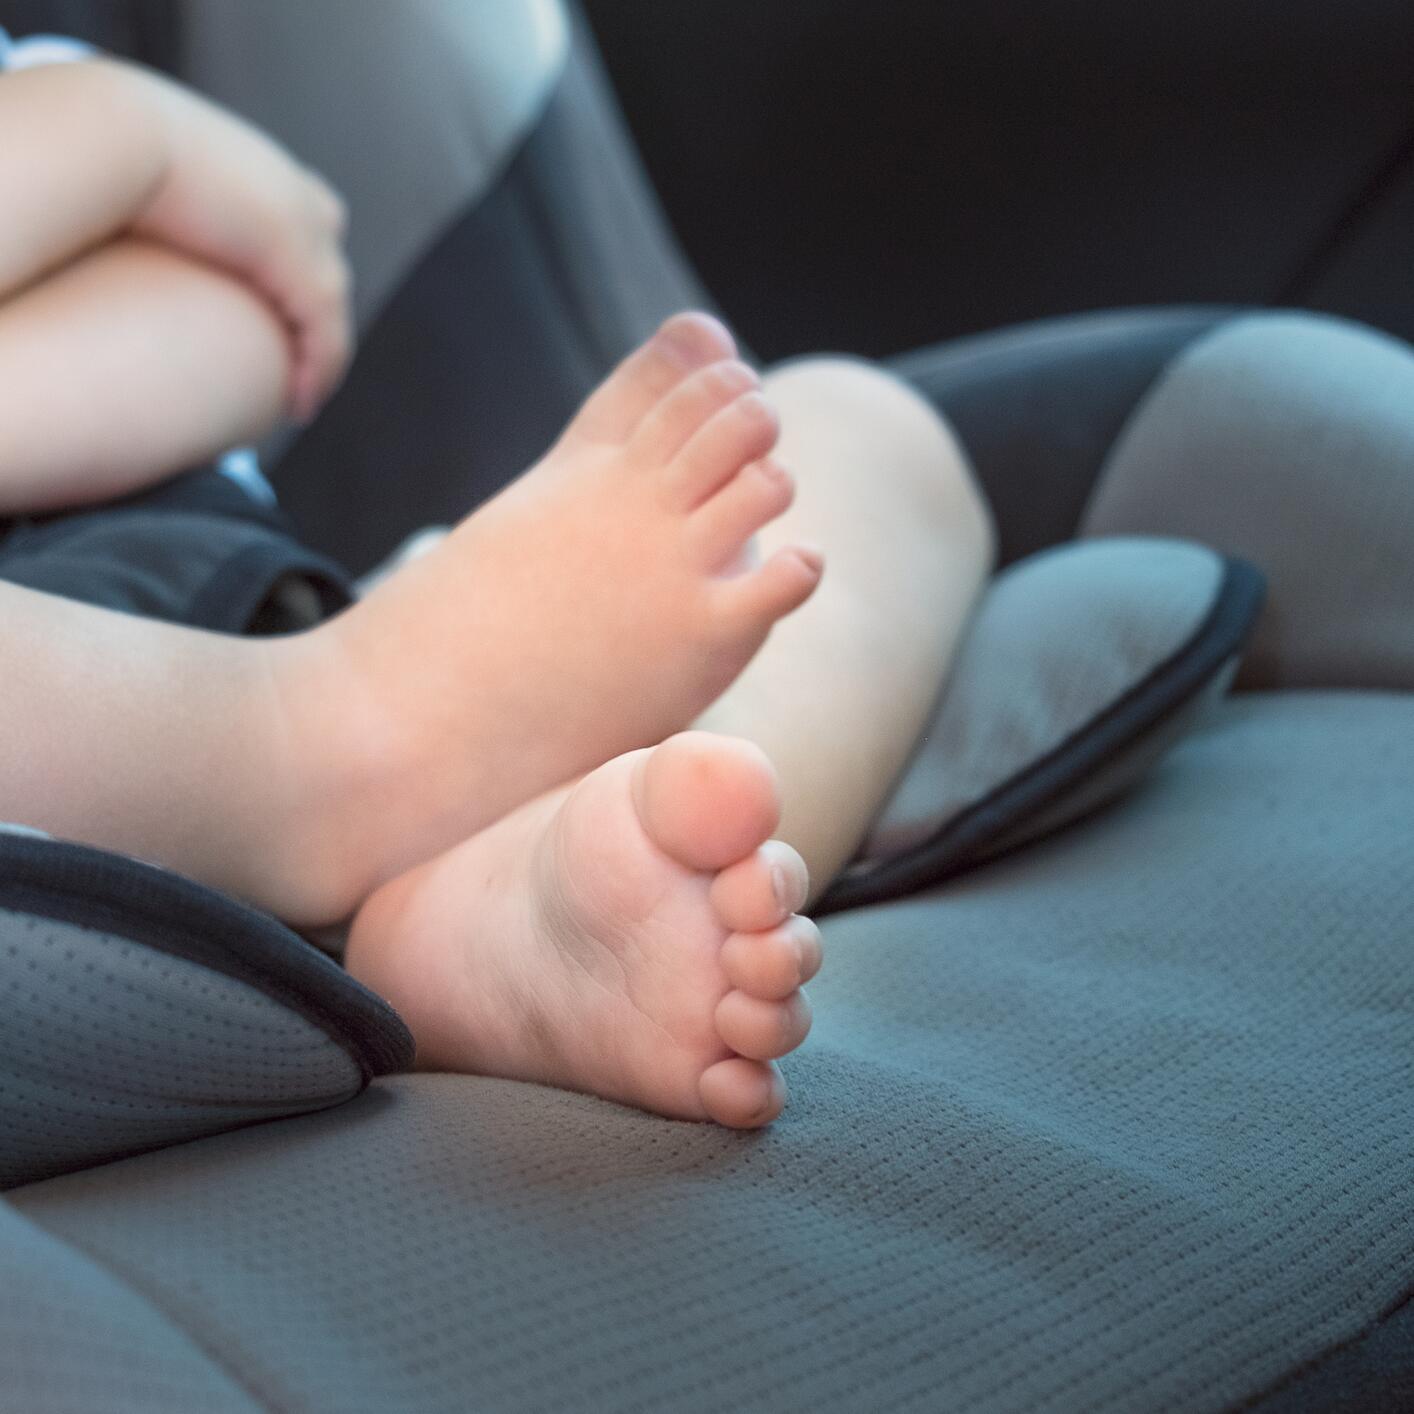 Kind starb im überhitzten Auto: Wie hätten Passanten helfen können?